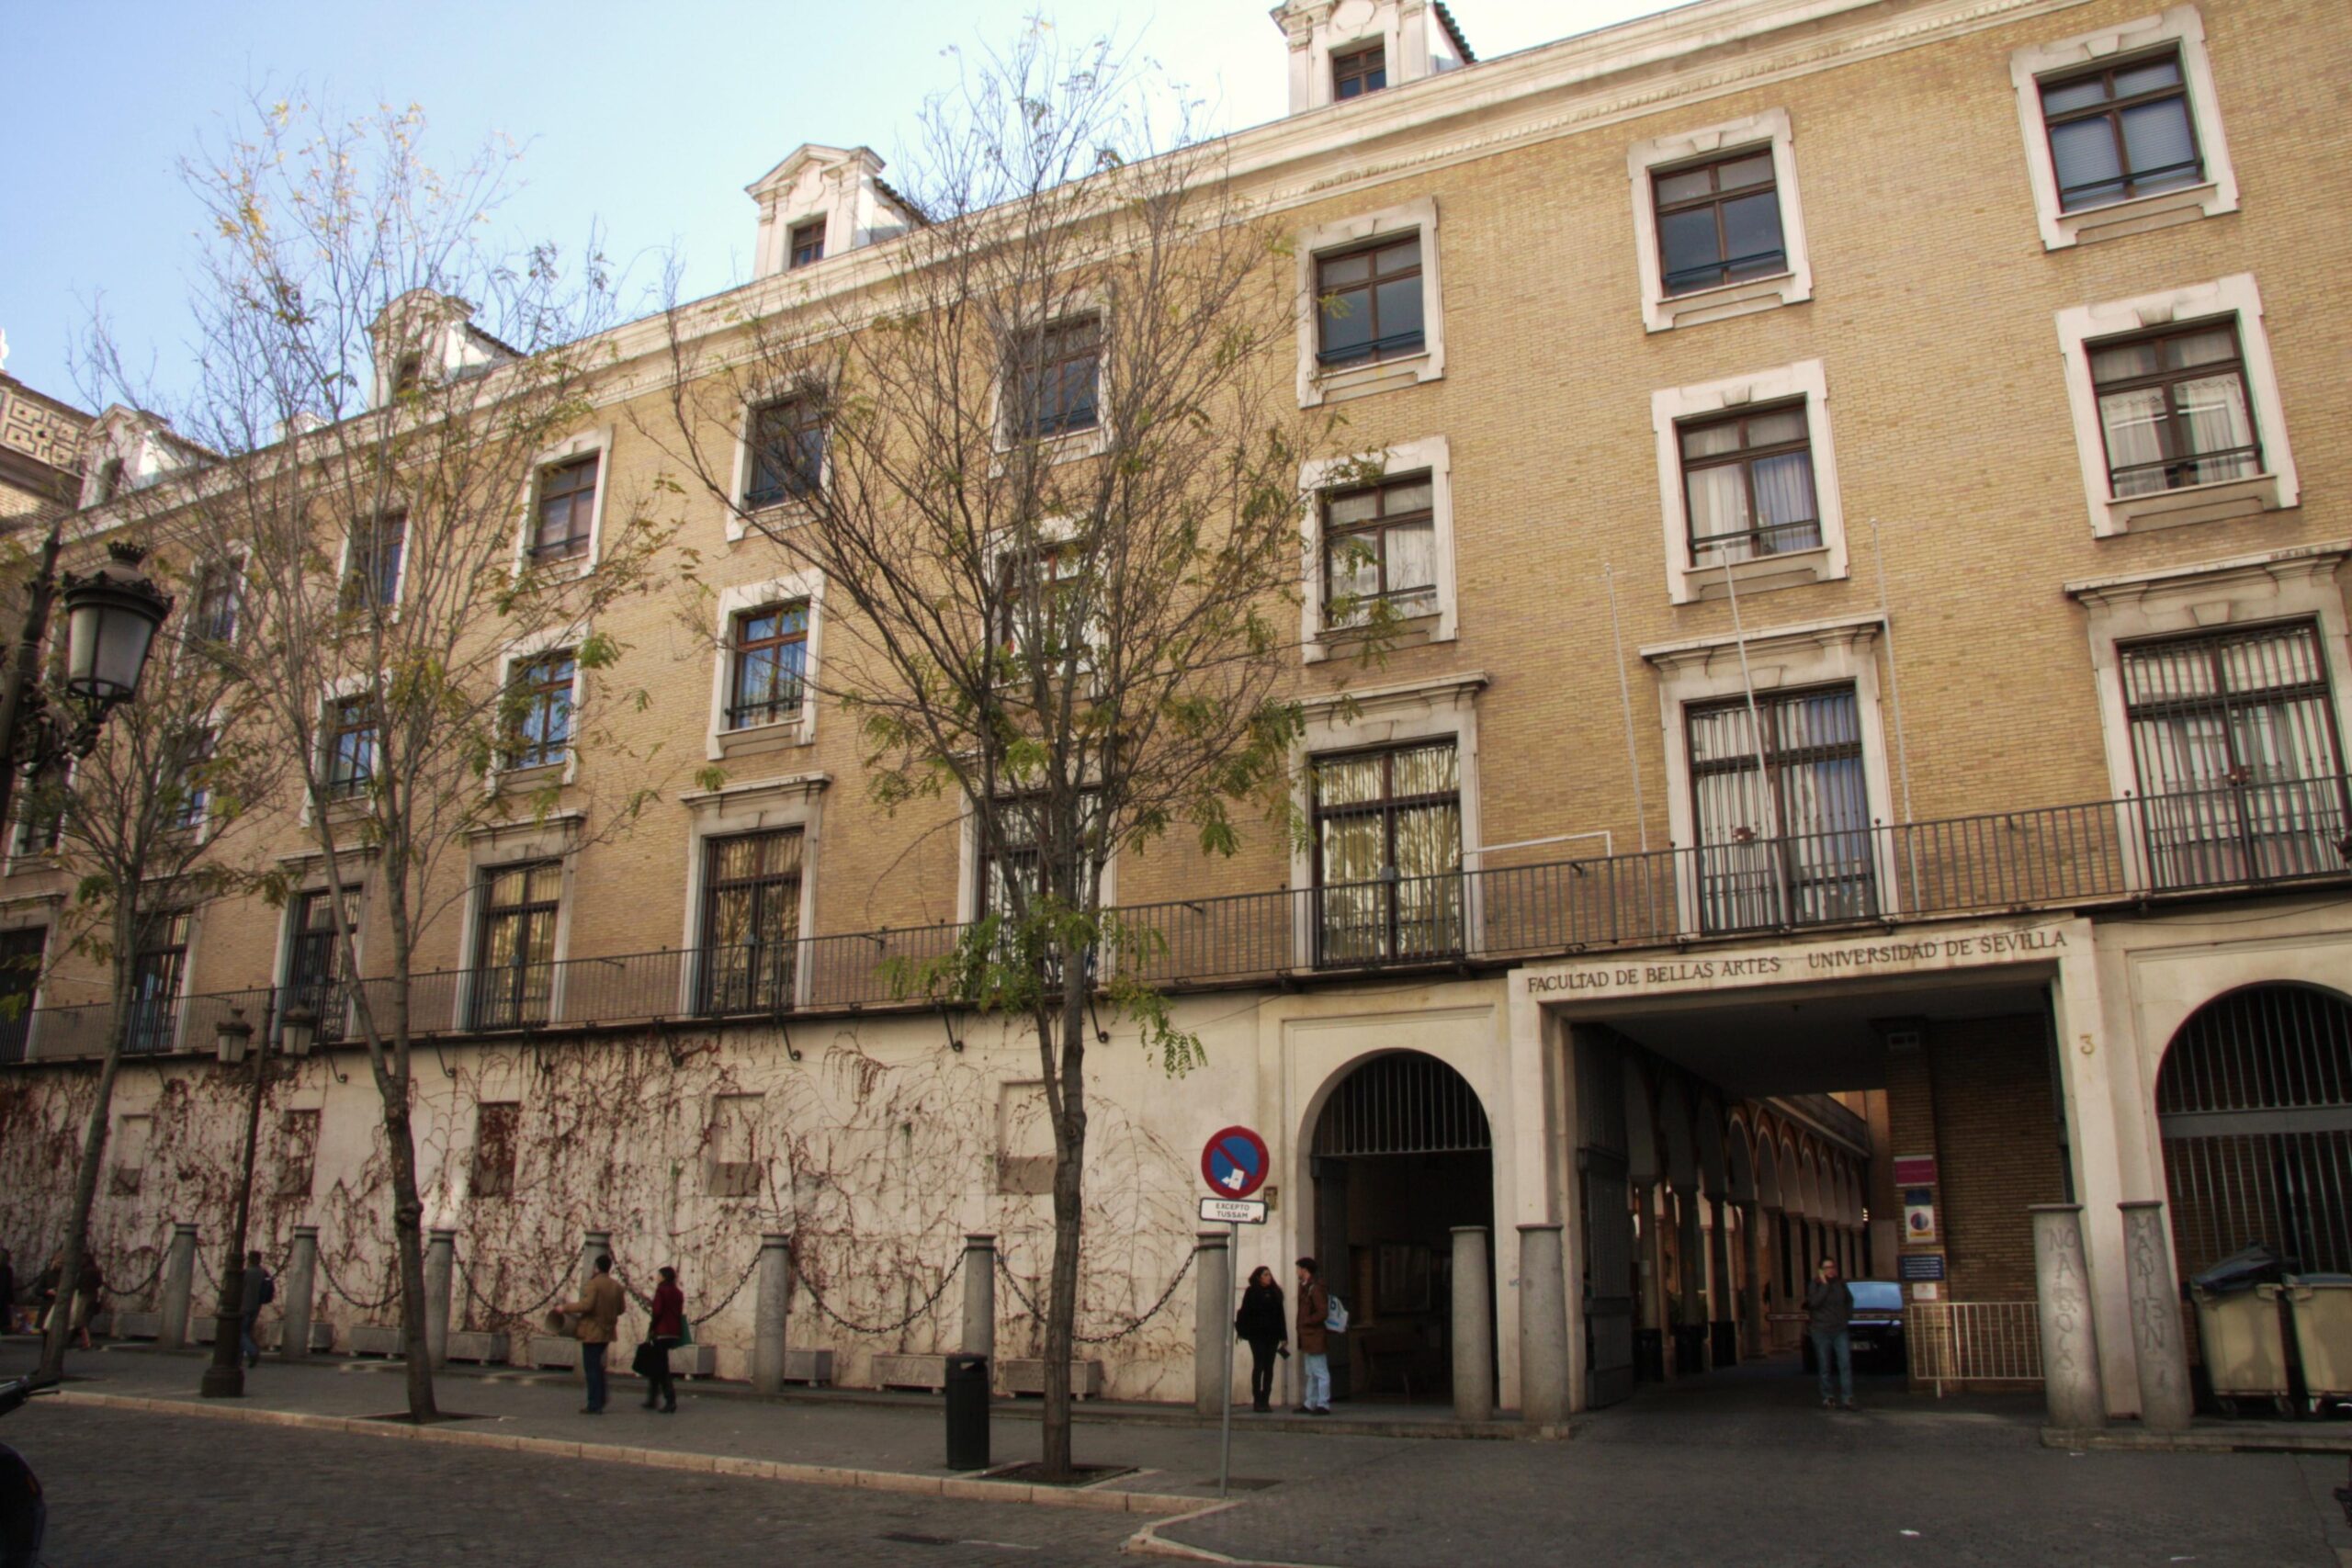 Edificio de la Facultad de Bellas Artes de la Universidad de Sevilla by adulanet.com